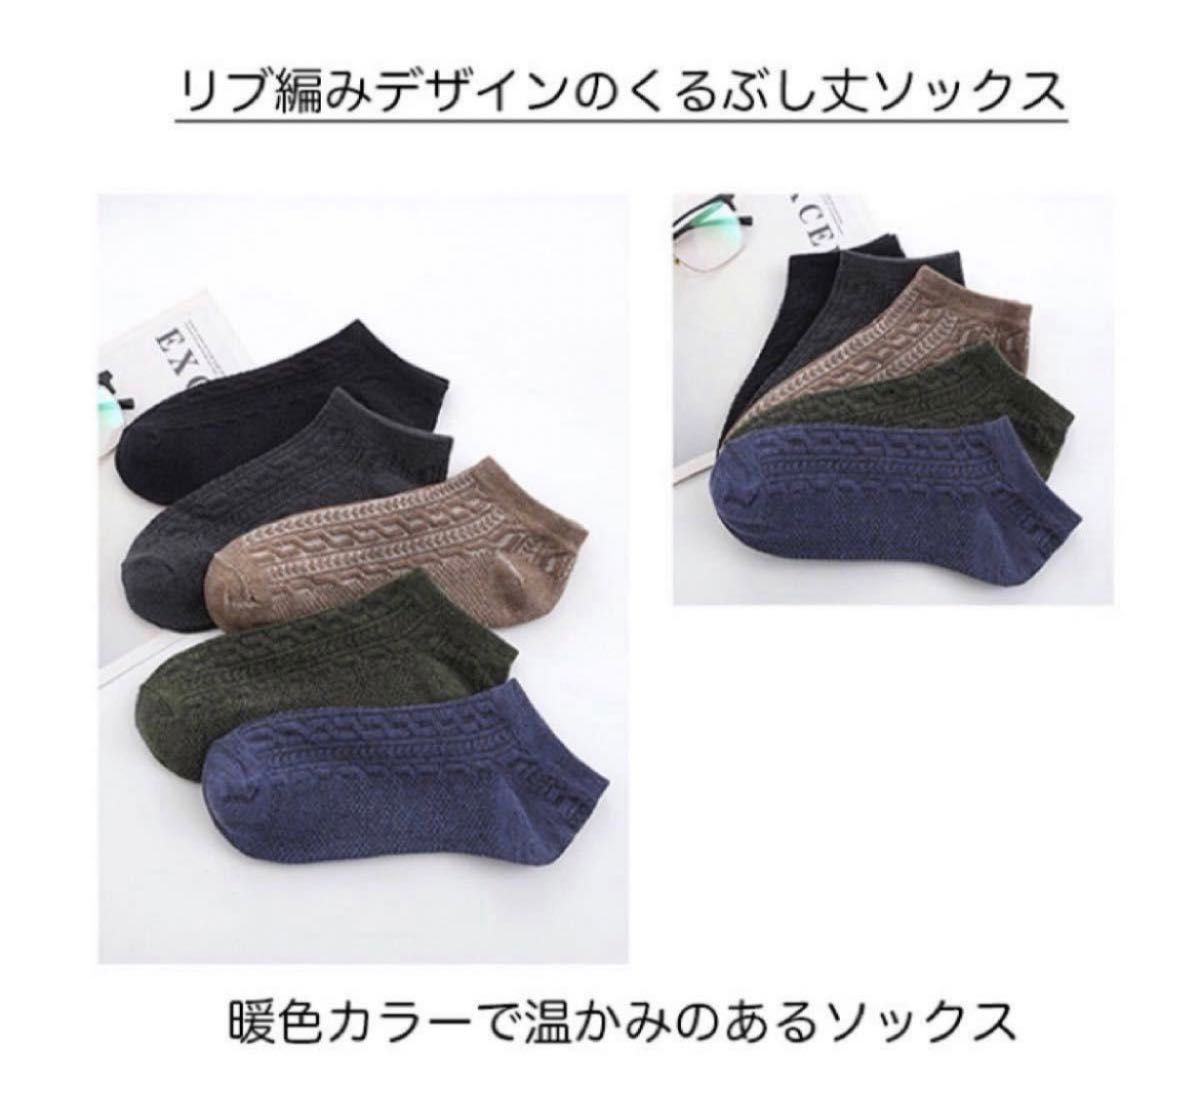 靴下 ソックス メンズ くるぶし丈 無地 シンプル 5足セット リブ編み 編み込み 使いやすい デイリー スニーカー ビジネス 